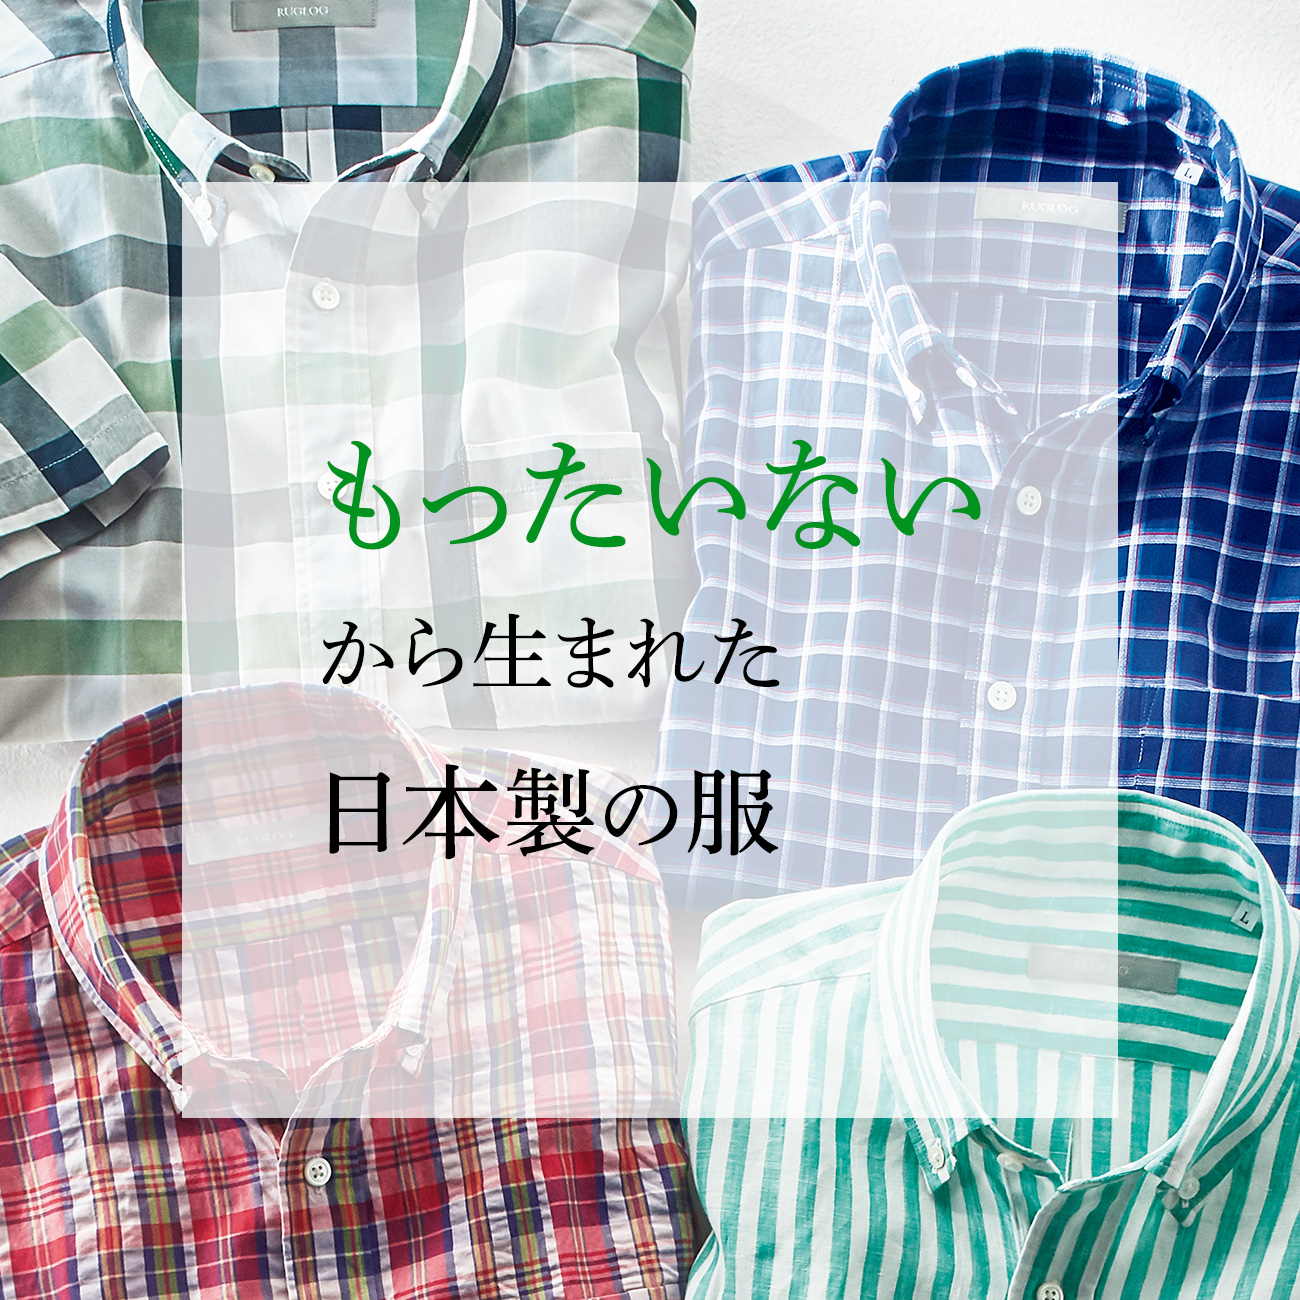 【特集】「もったいない」から生まれた日本製の服